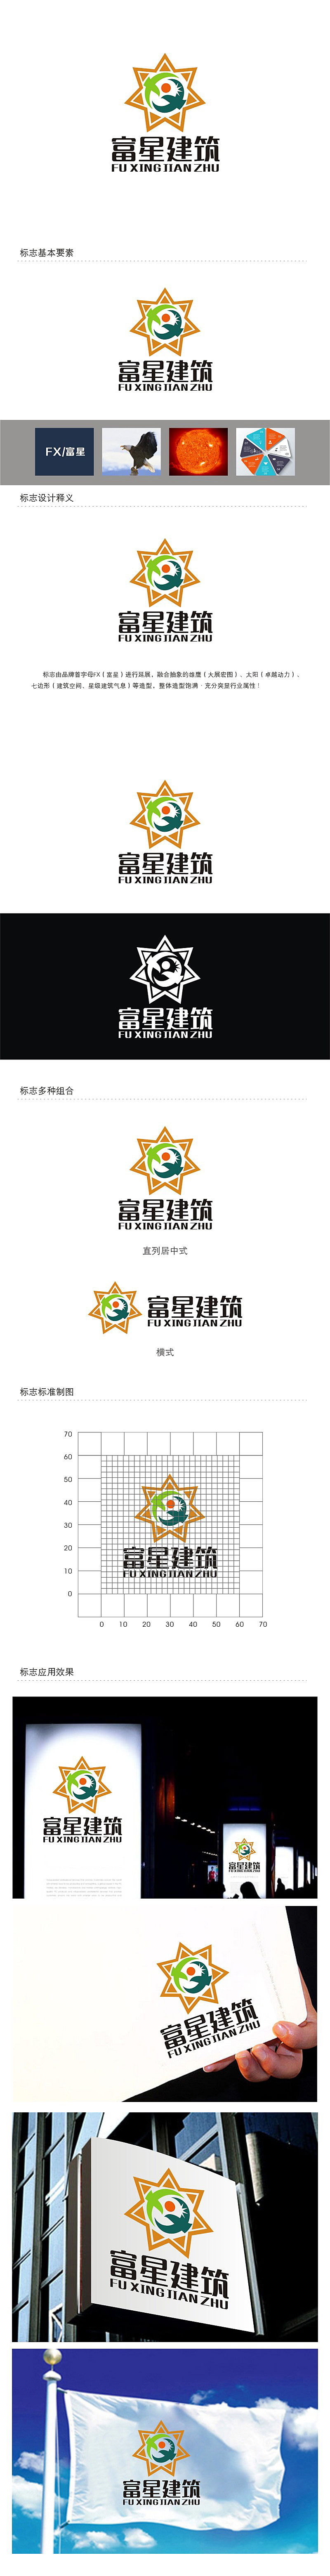 劳志飞的天津富星建筑工程有限公司logo设计